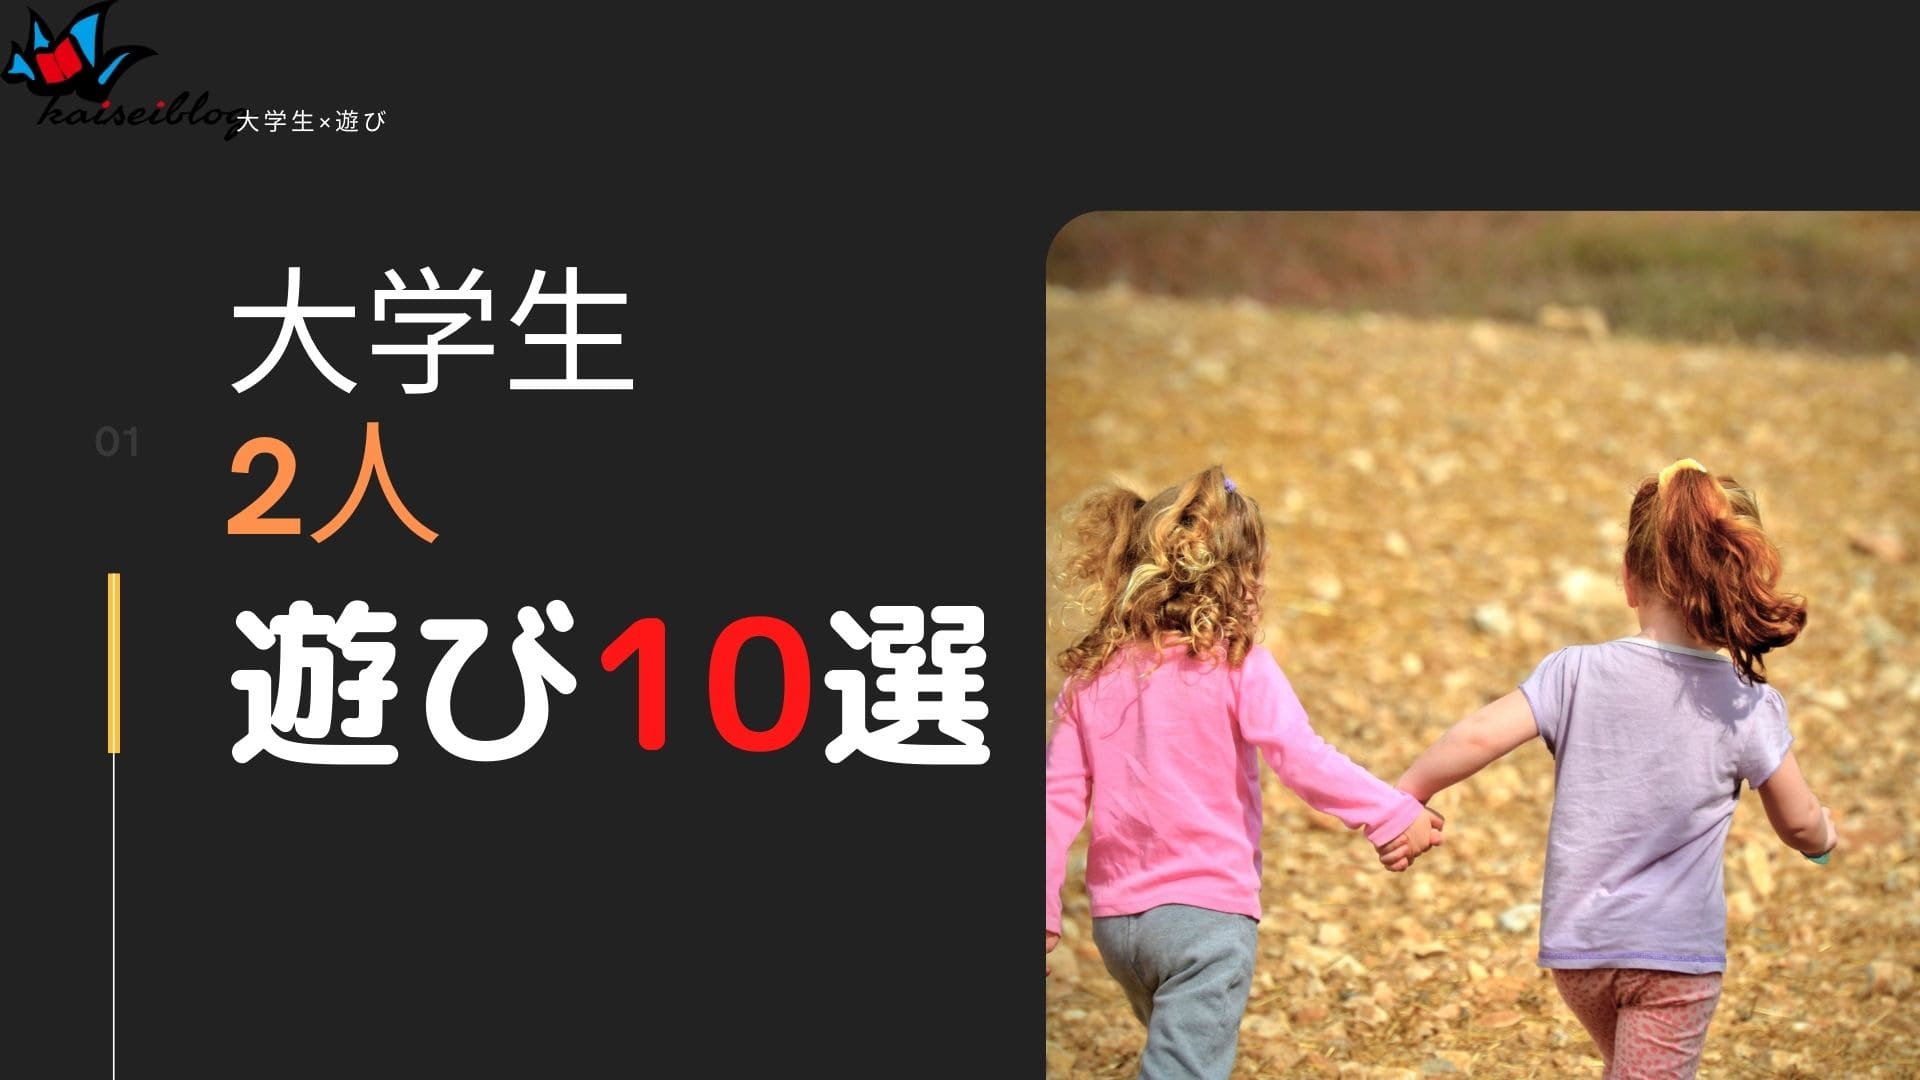 オススメ 大学生が2人でできる遊び10選紹介 場所も紹介 Kaiseiblog